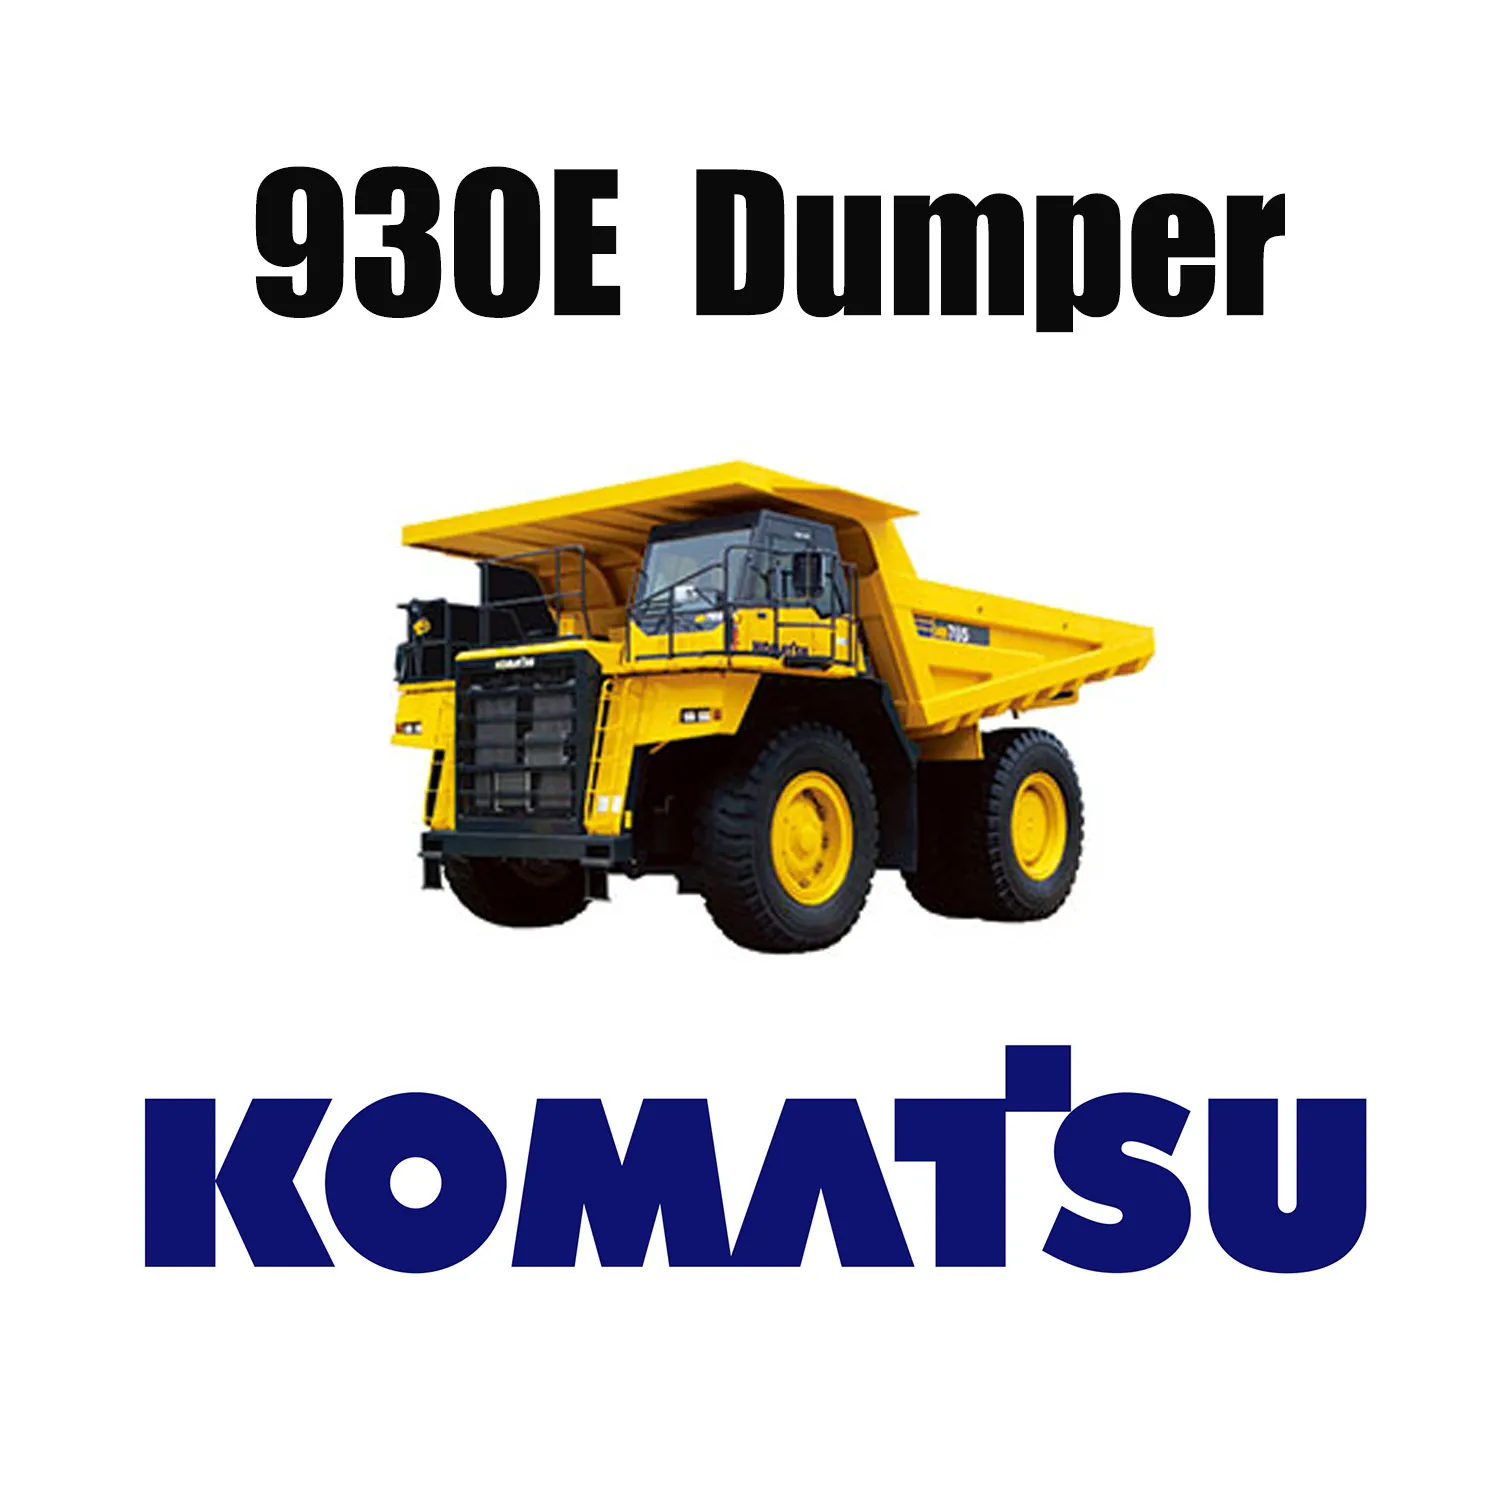 53/80R63 Off-the-road mijnbouwbanden aangevraagd voor KOMATSU 930E